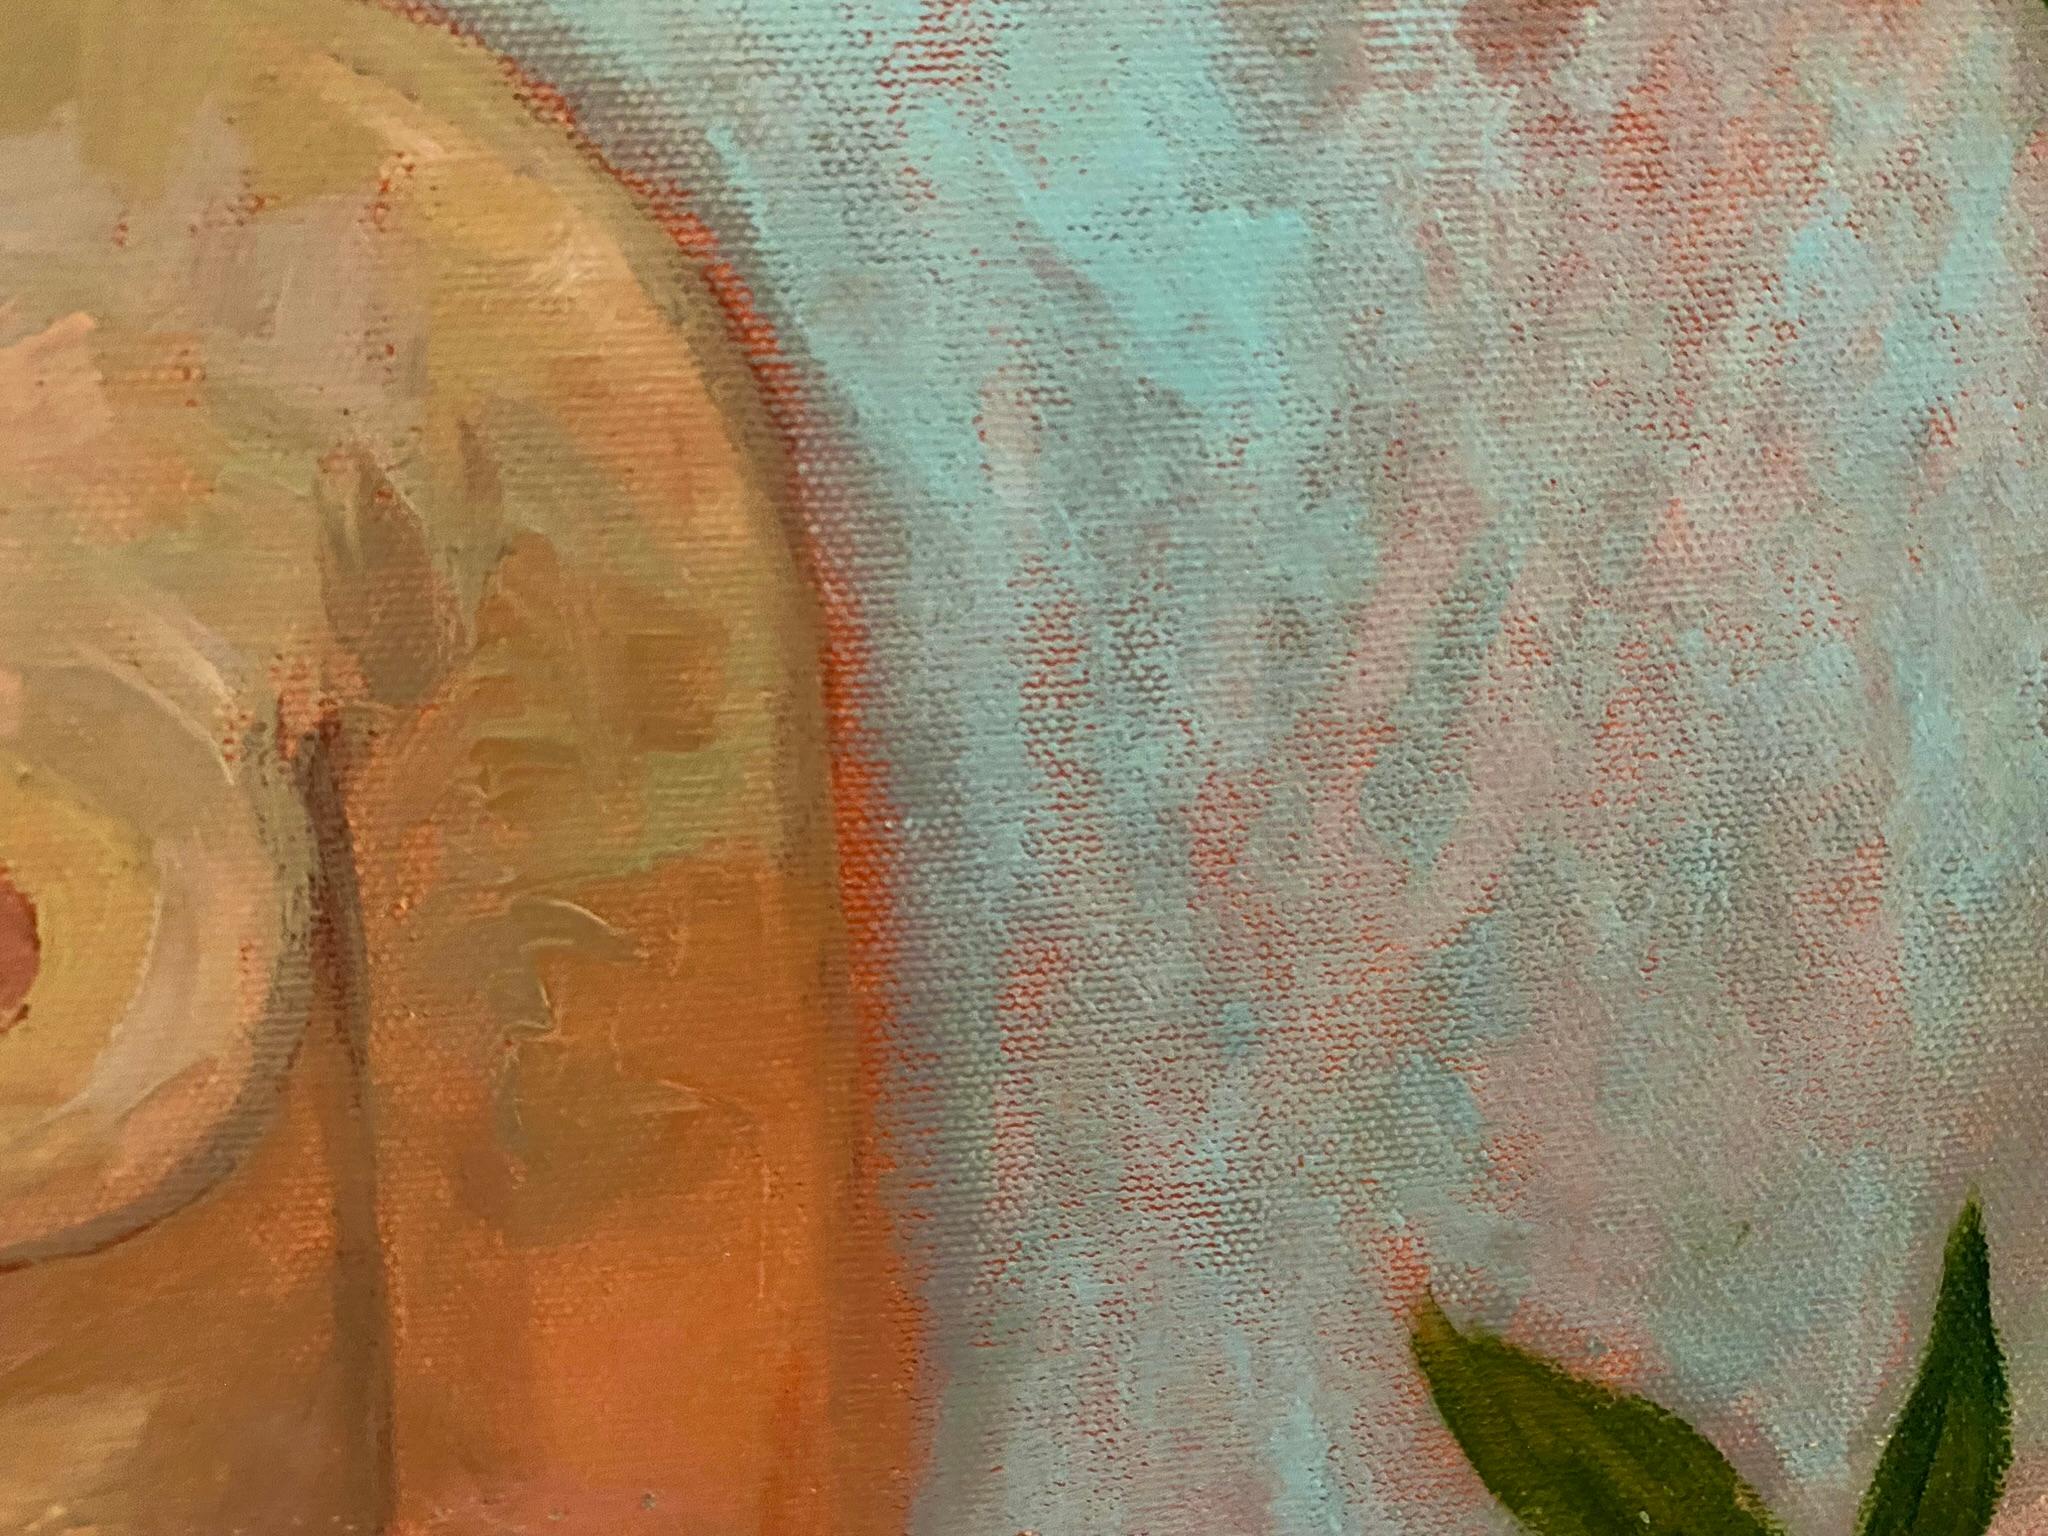 Sirens Art Modern Woman Nude, Bird Woman, canvas, oil  - Garden guards  6